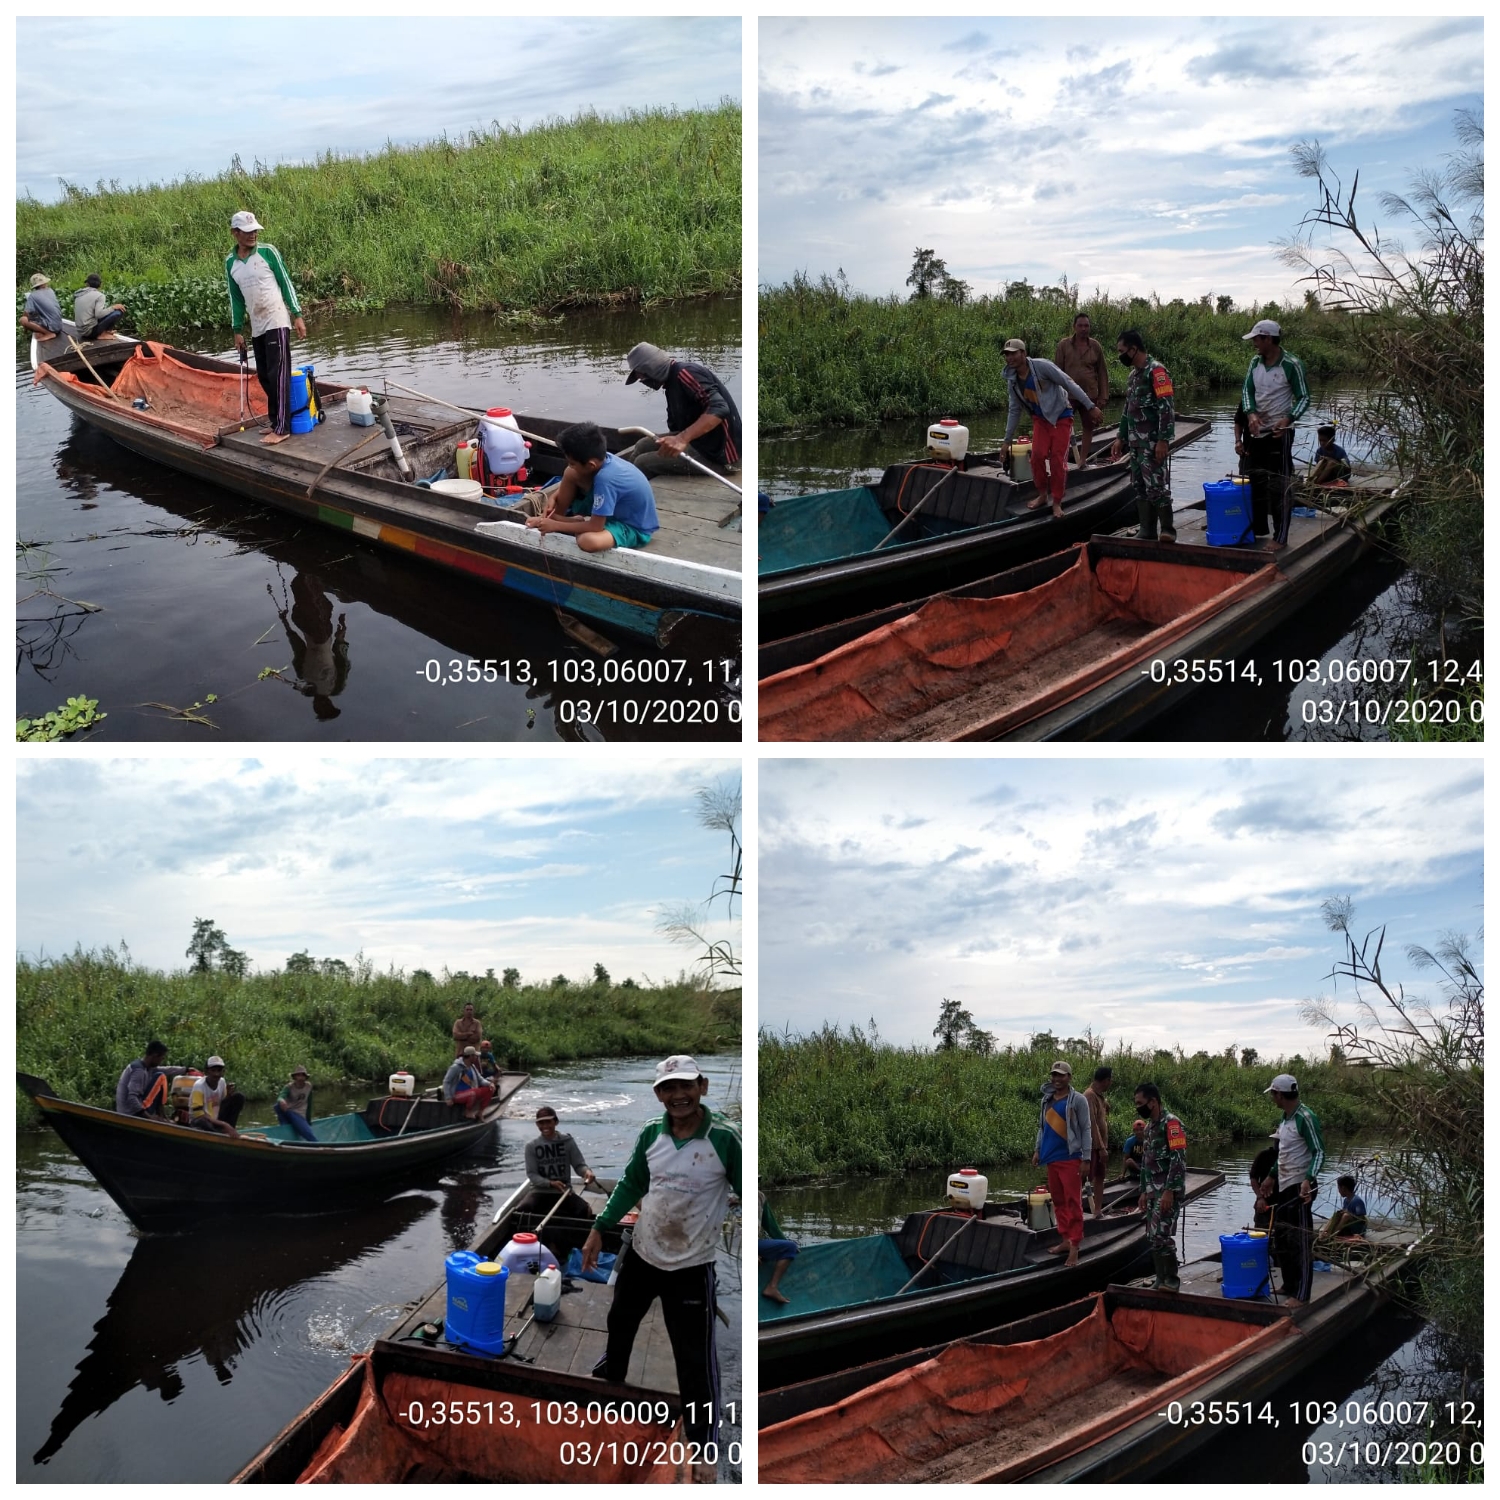 Kepala Desa Sialang Panjang Bersama Warga Gotong Royong Bersihkan Aliran Sungai